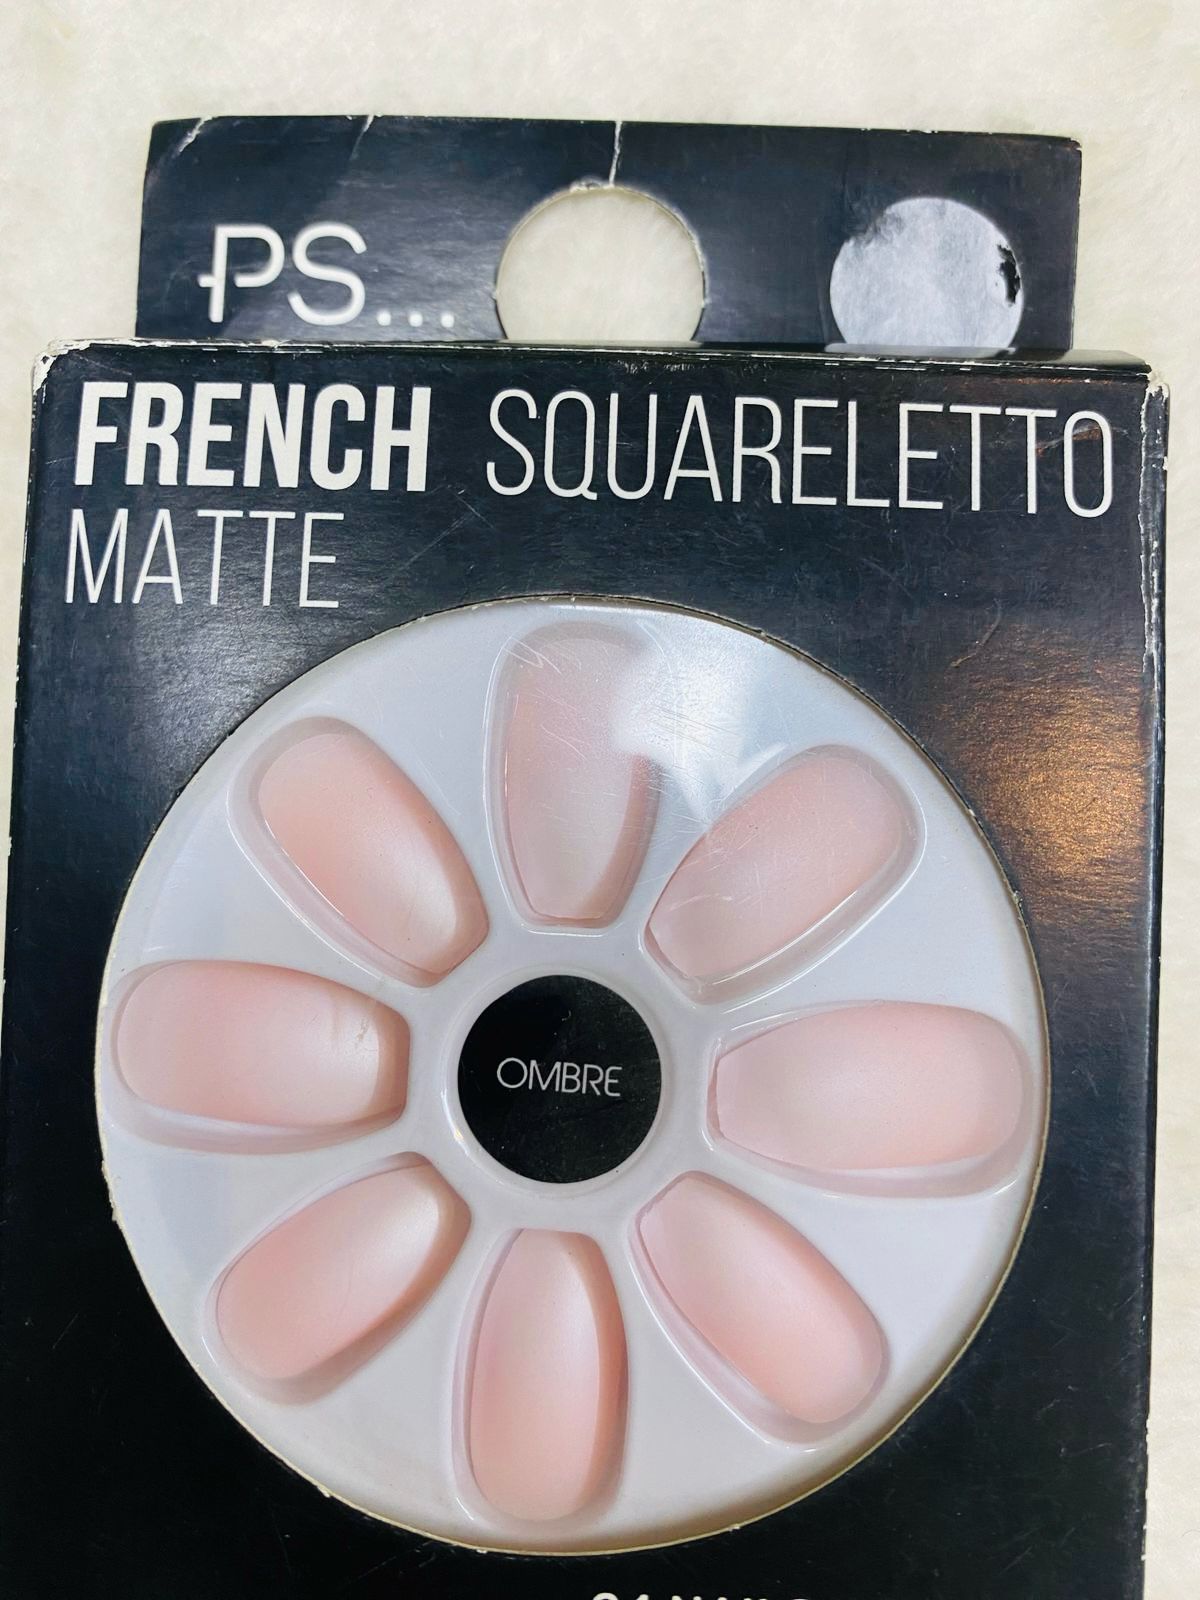 French squareletto matte